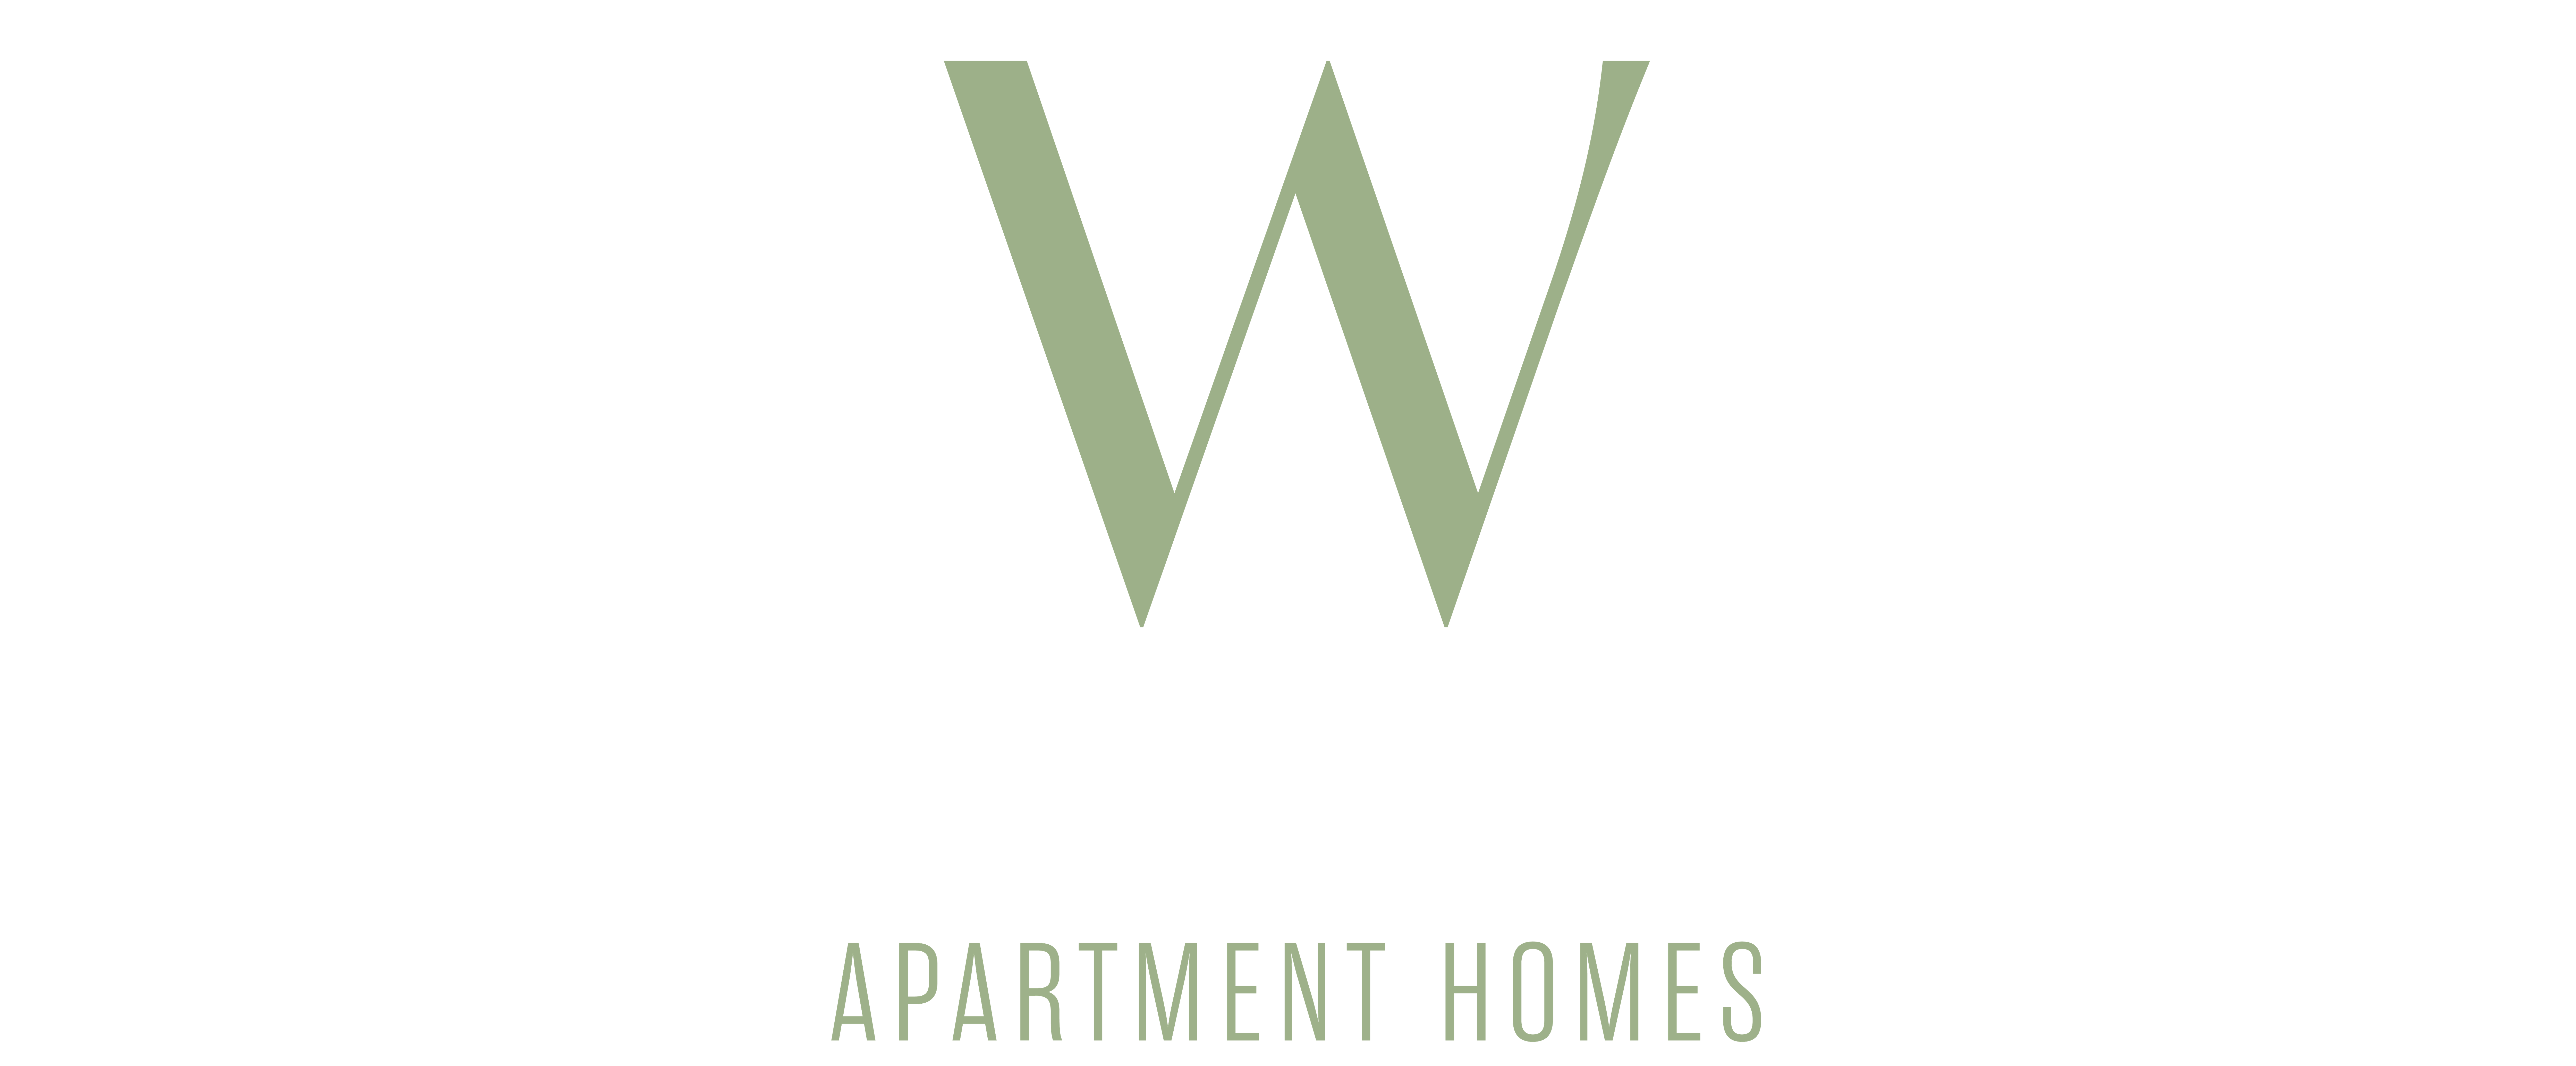 Woodlawn Manor logo